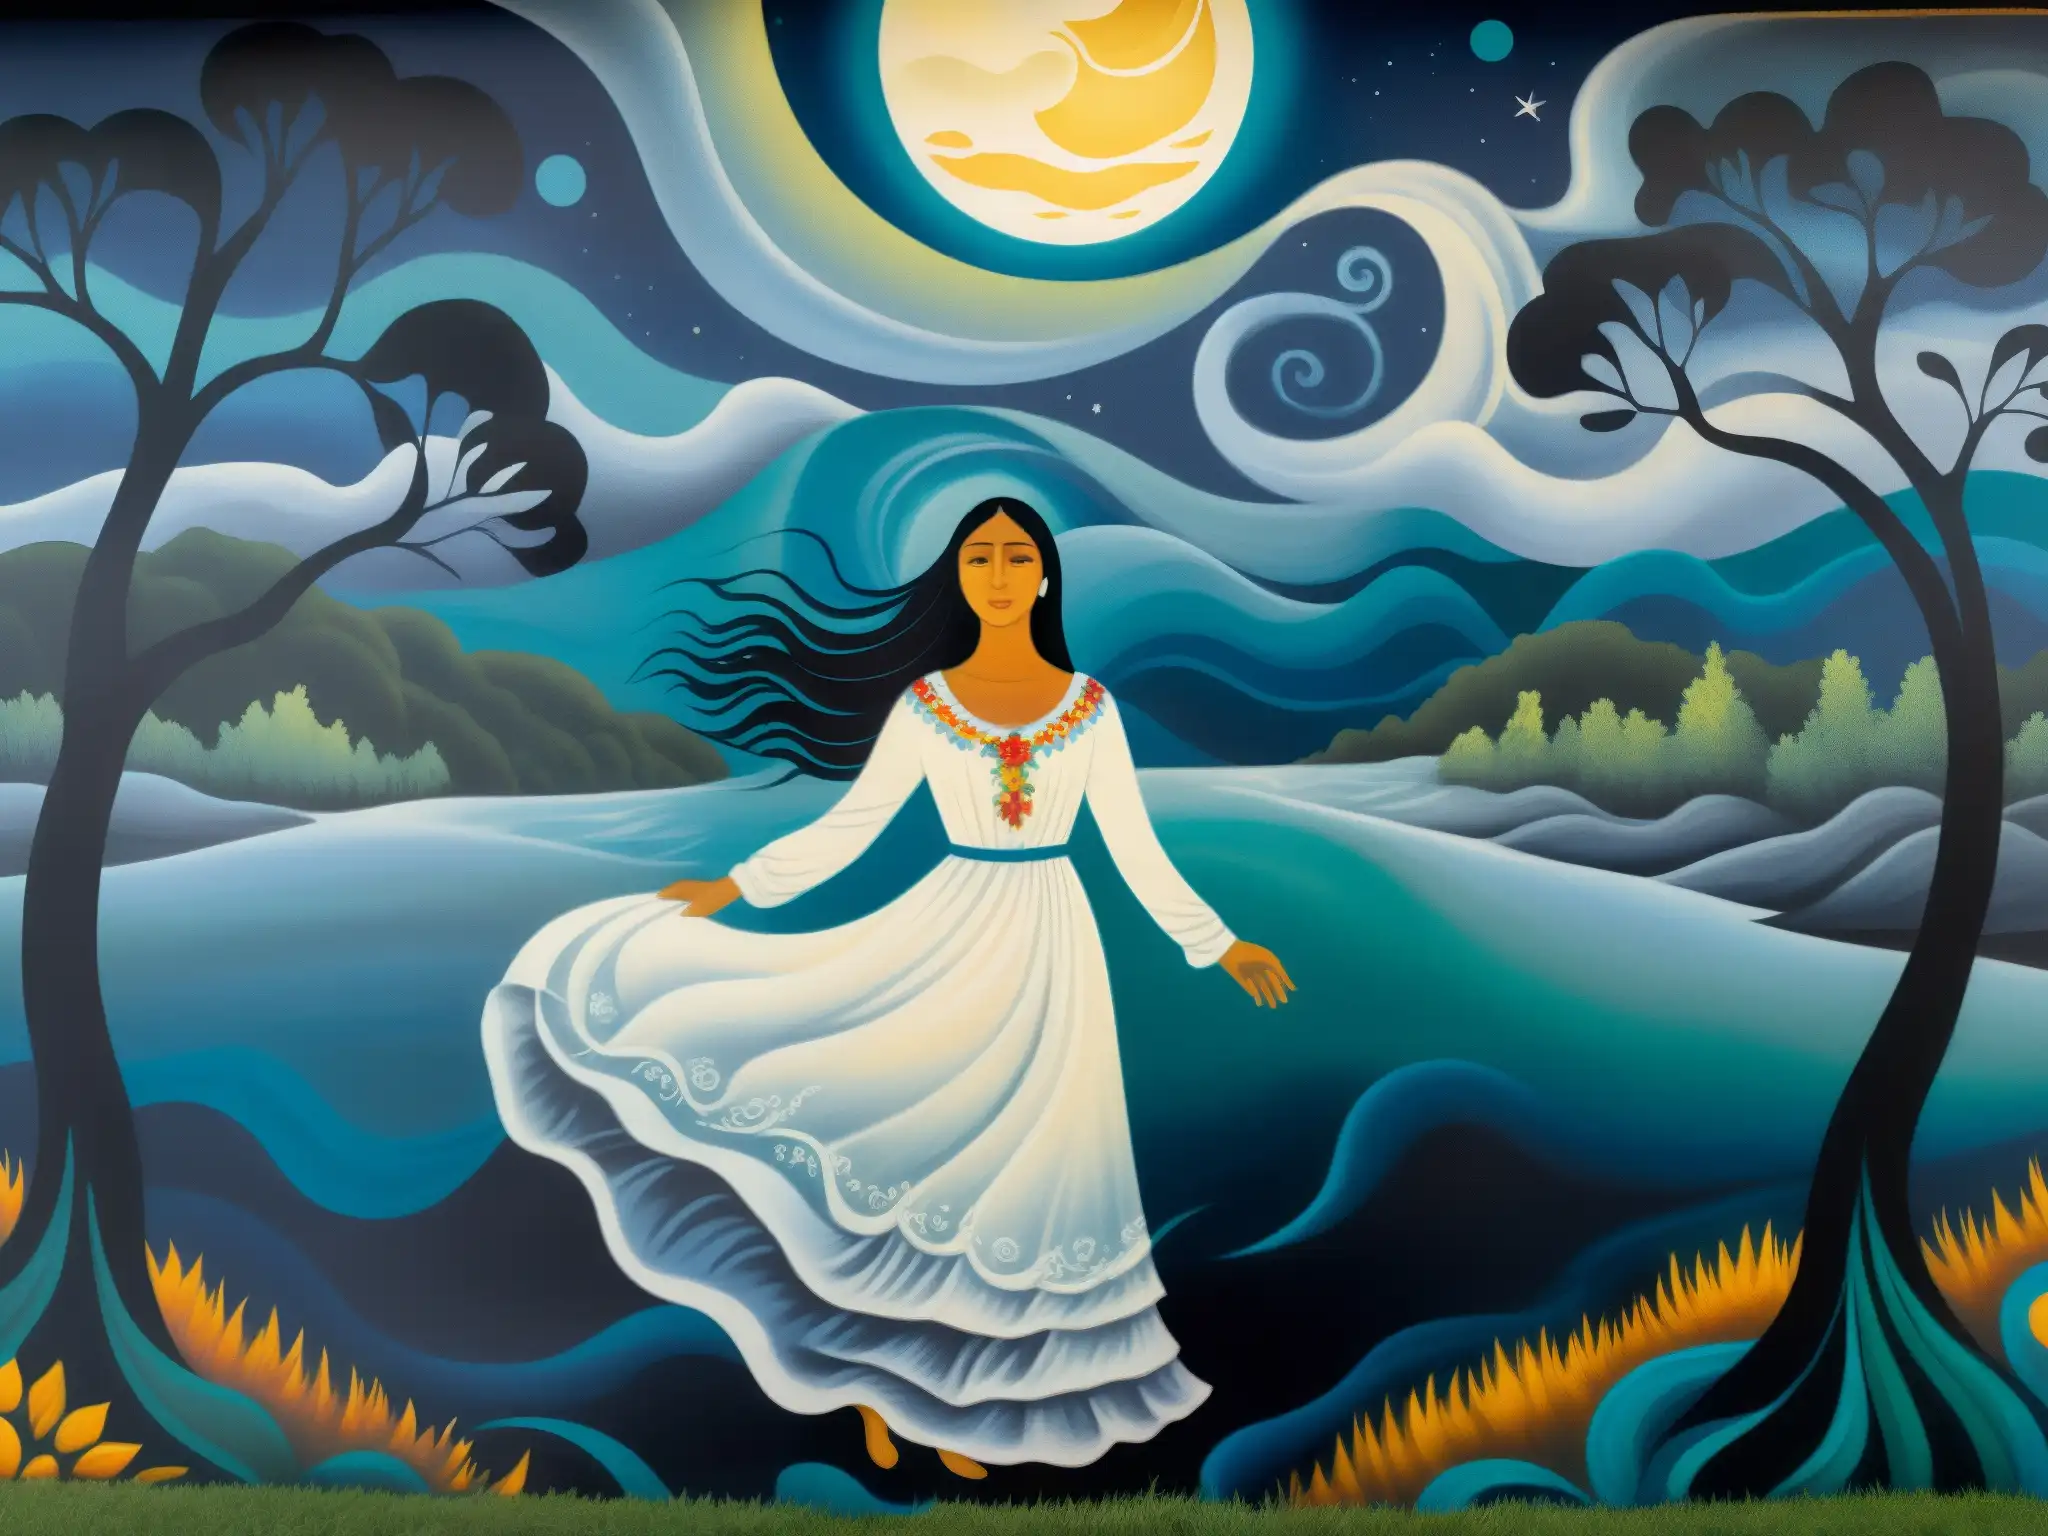 Un mural impresionante que representa a La Llorona vagando por un río iluminado por la luna, con colores vibrantes y detalles intrincados